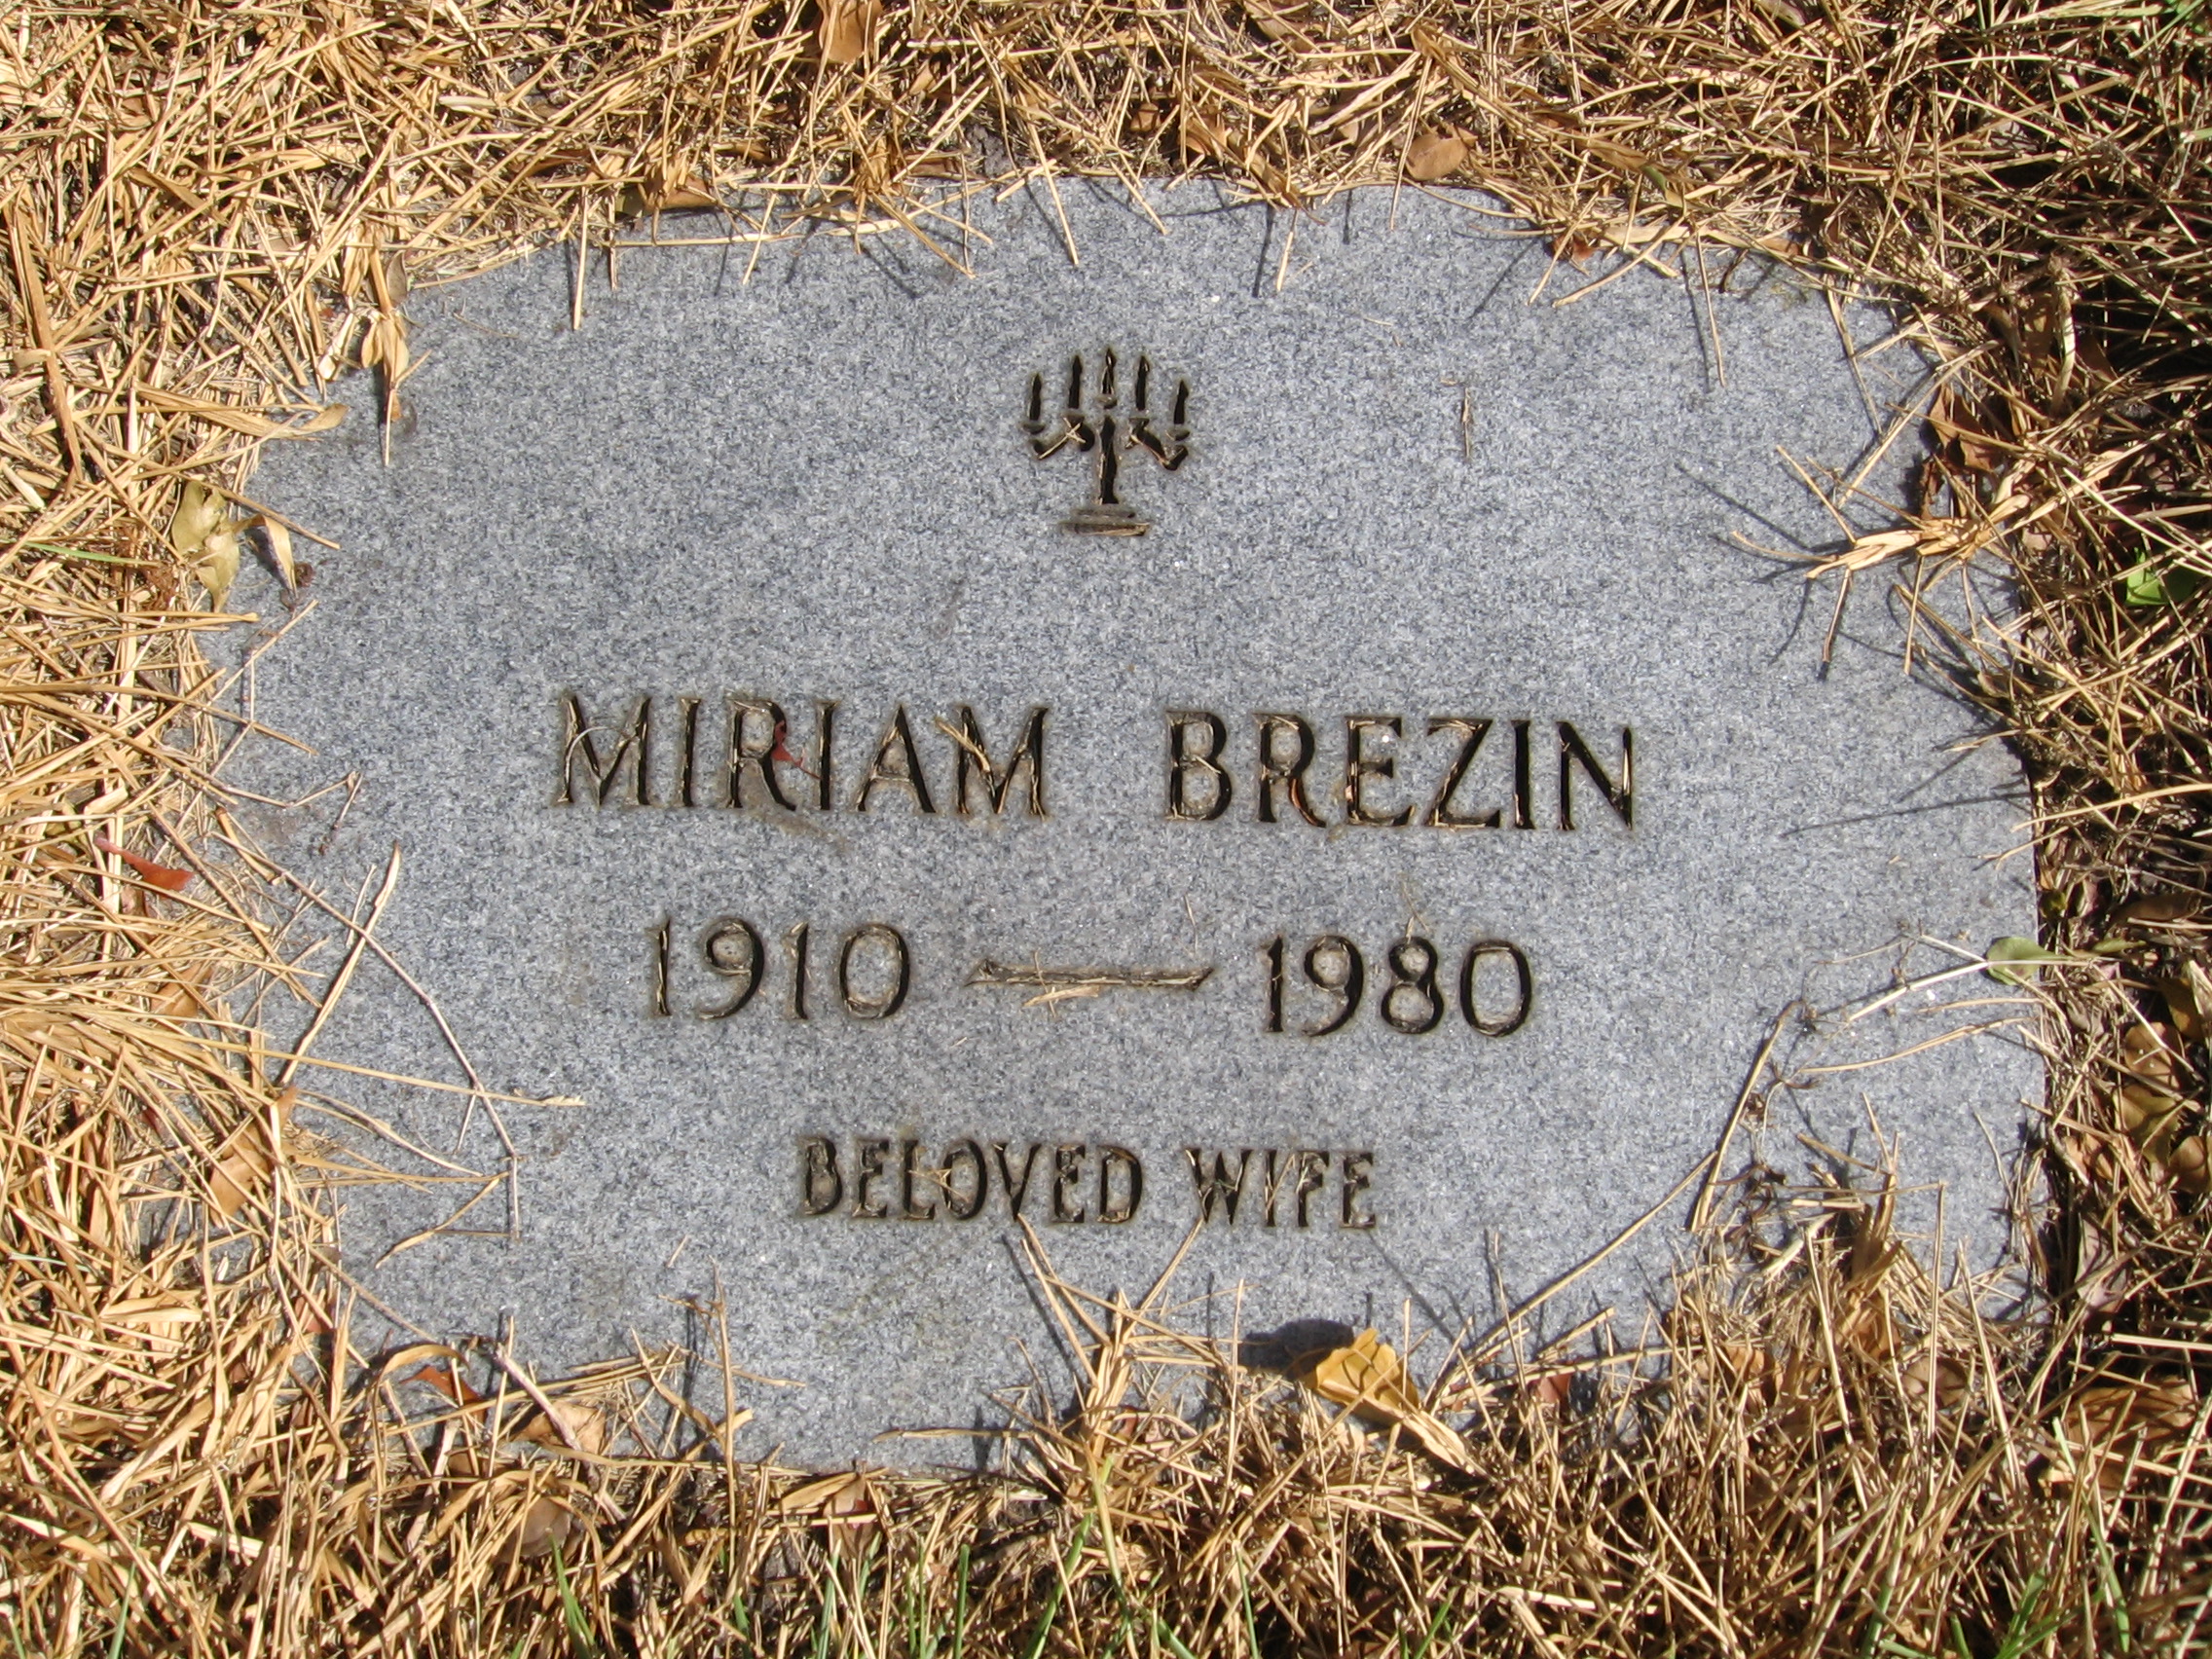 Miriam Brezin